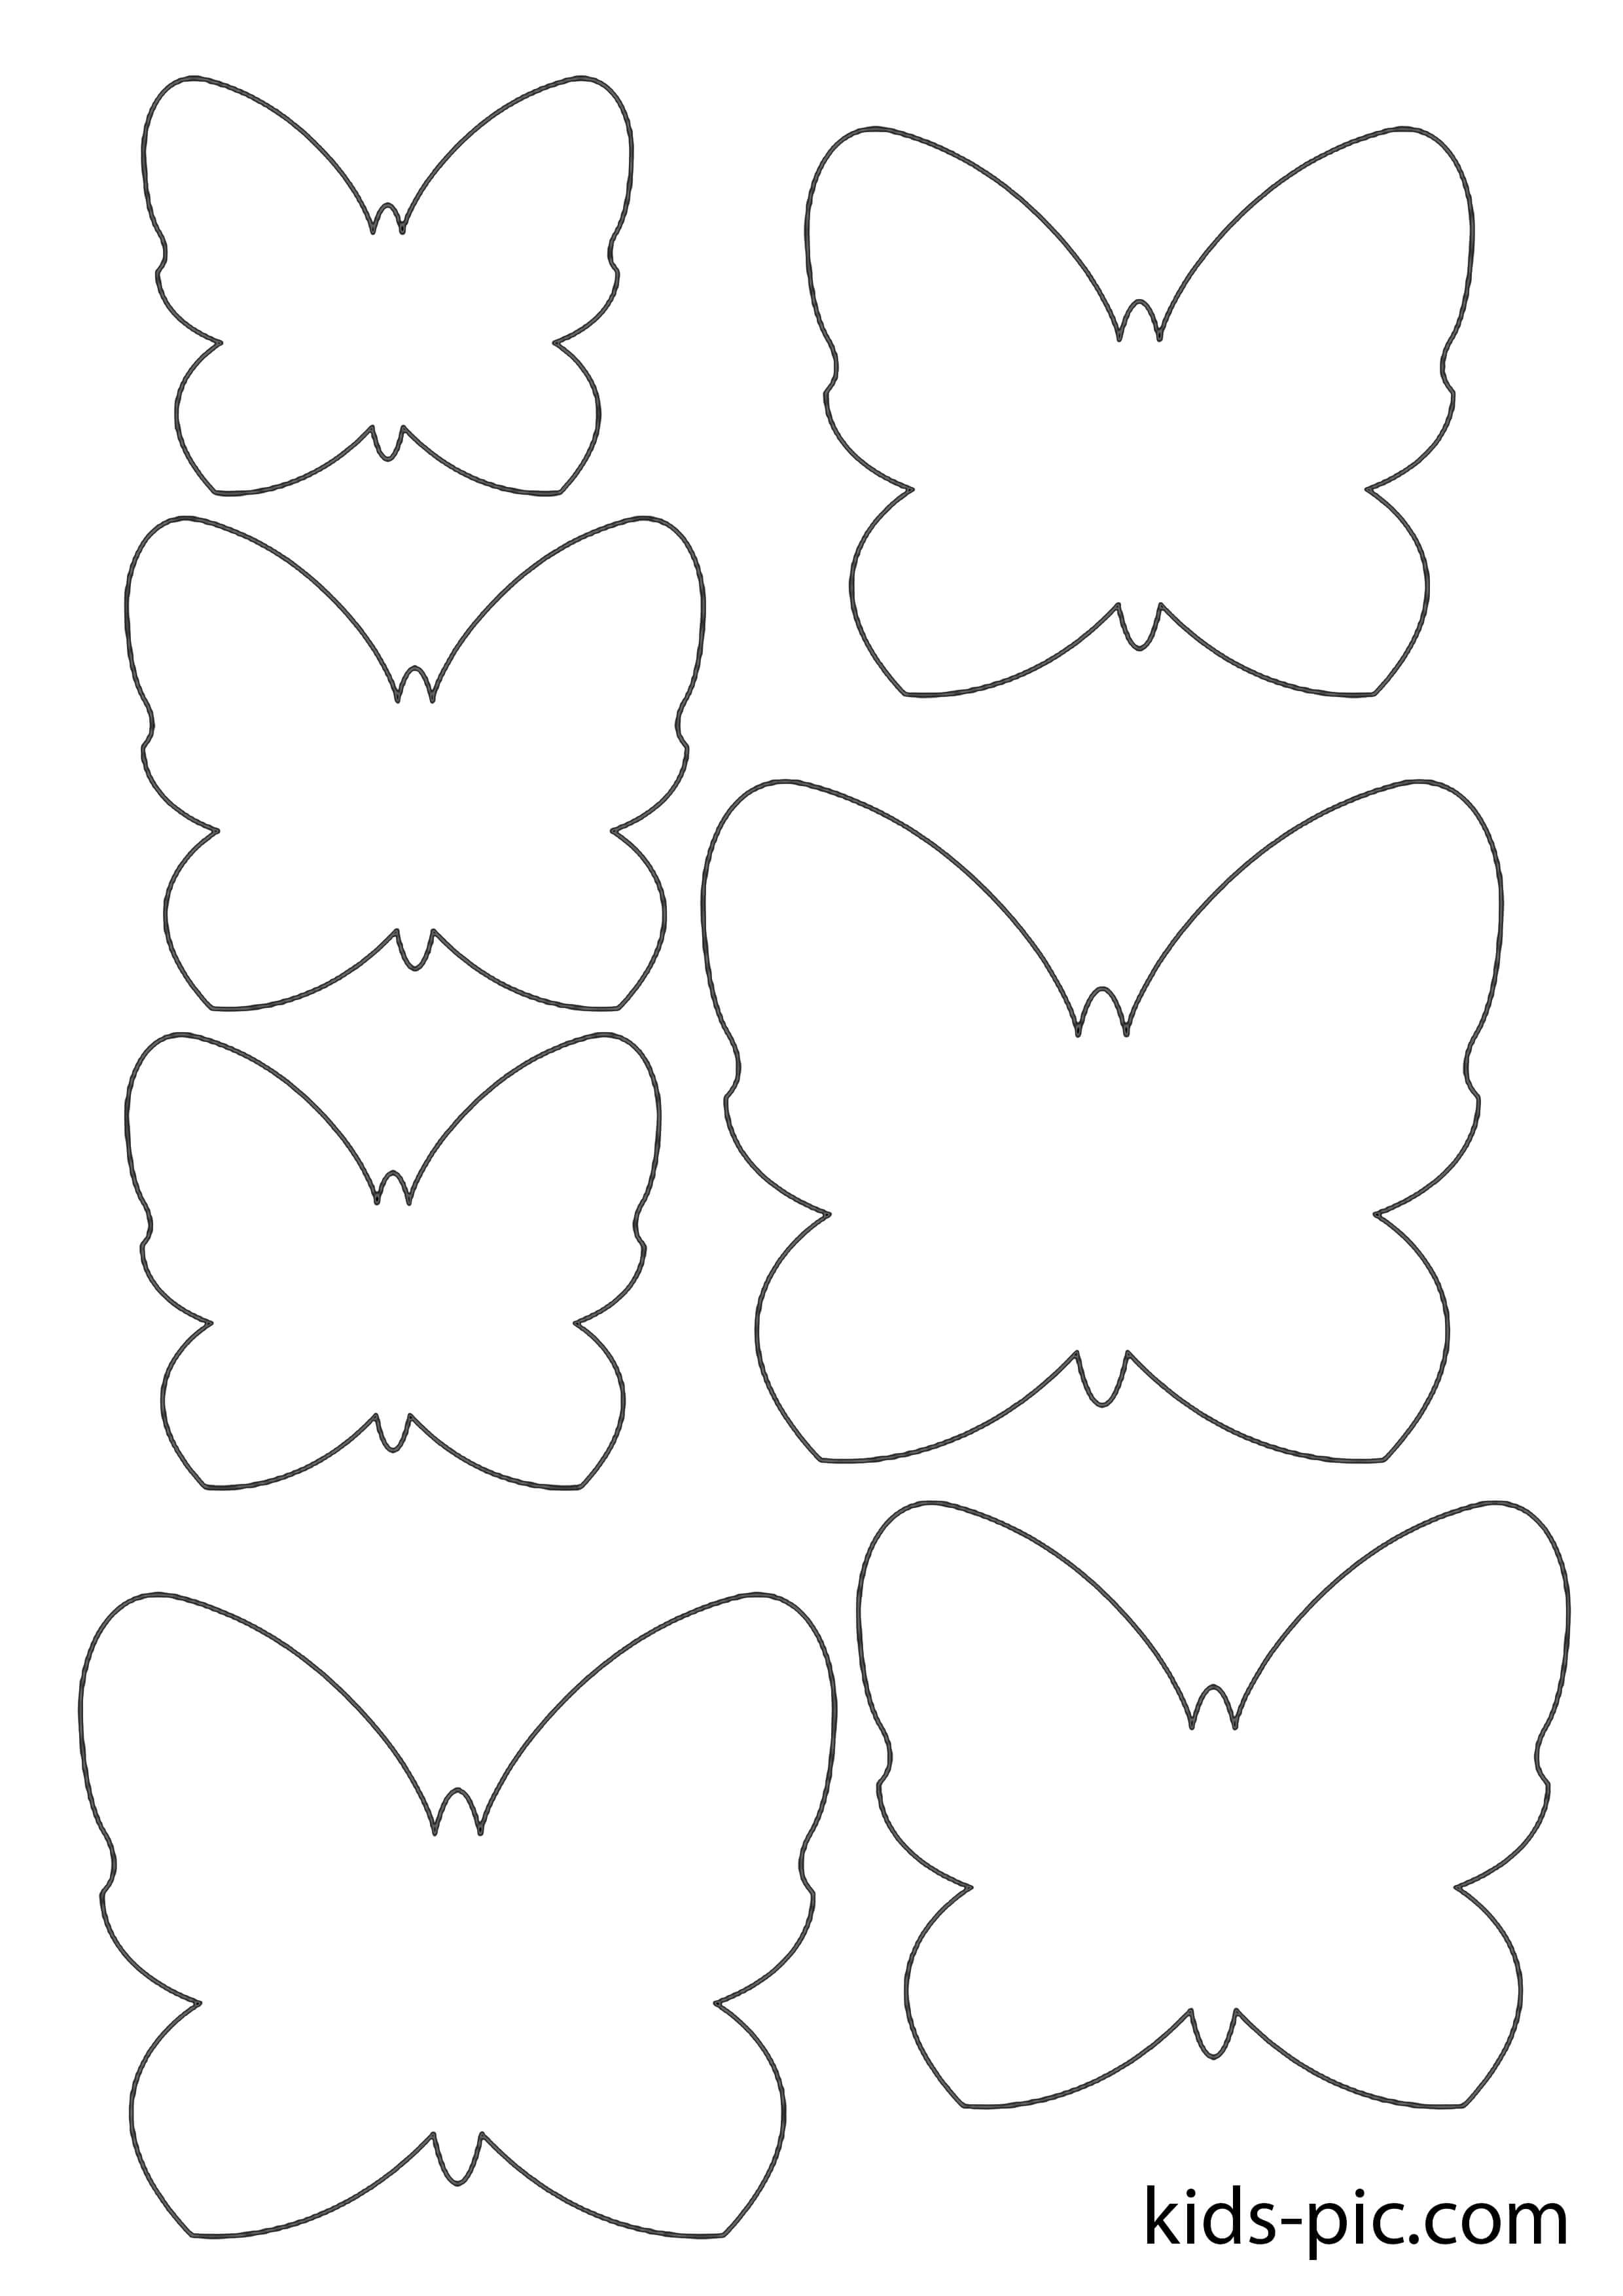 5 комментариев для “Шаблоны бабочек”